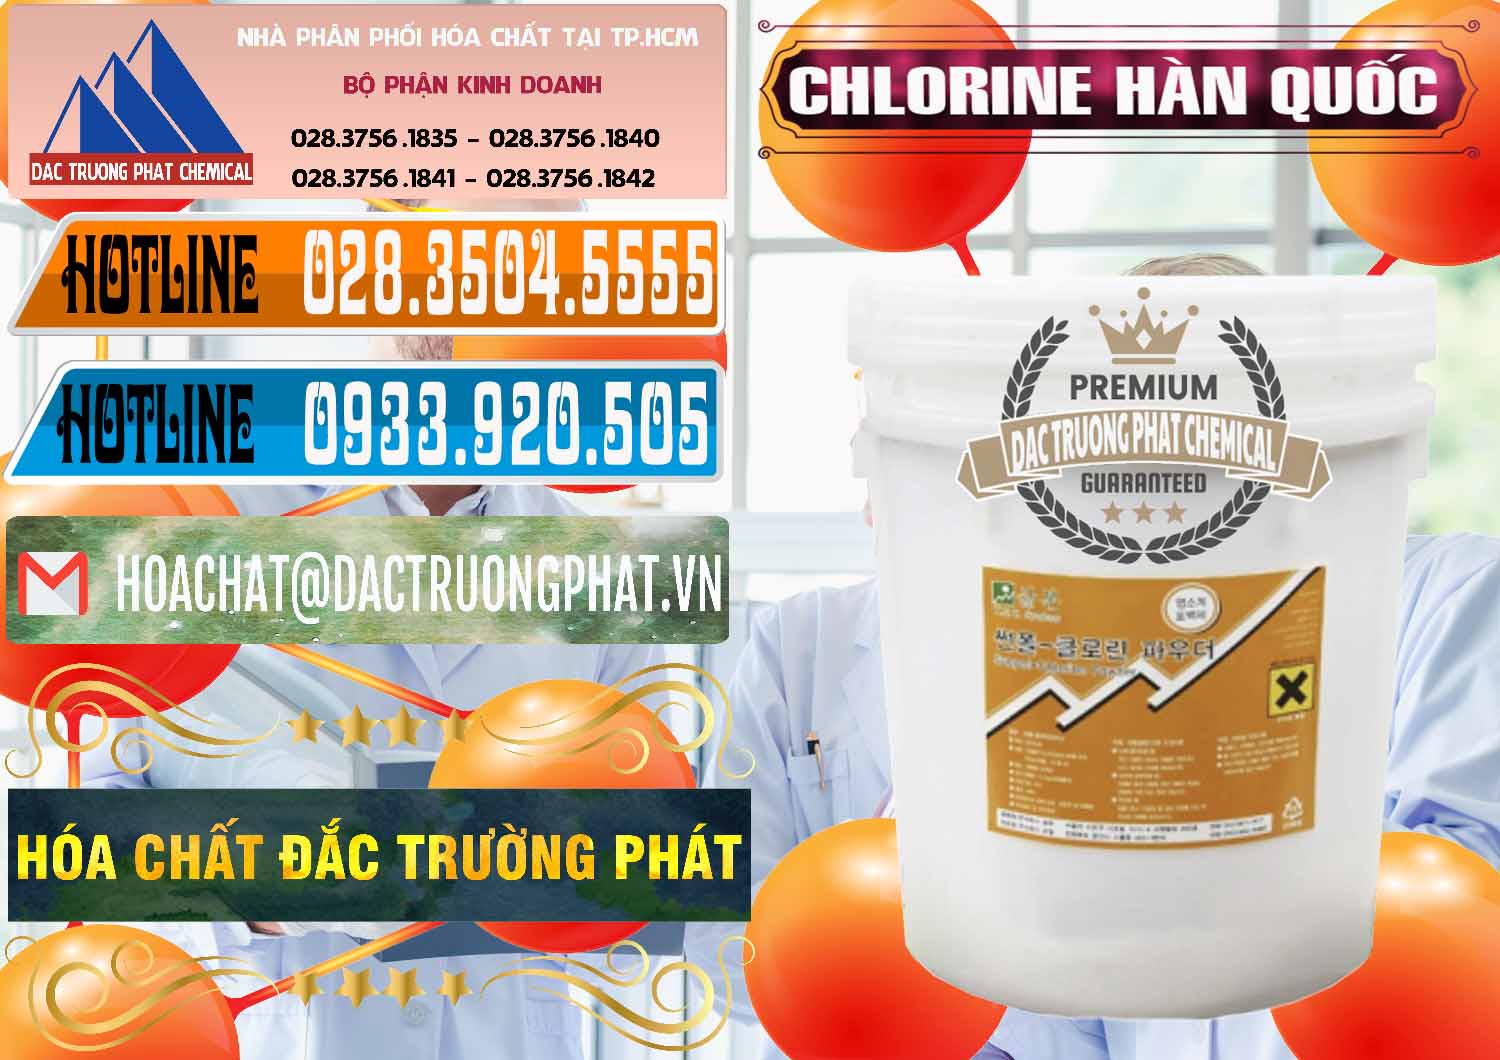 Công ty chuyên cung cấp - bán Chlorine – Clorin 70% Hàn Quốc Korea - 0345 - Đơn vị chuyên cung cấp - nhập khẩu hóa chất tại TP.HCM - stmp.net